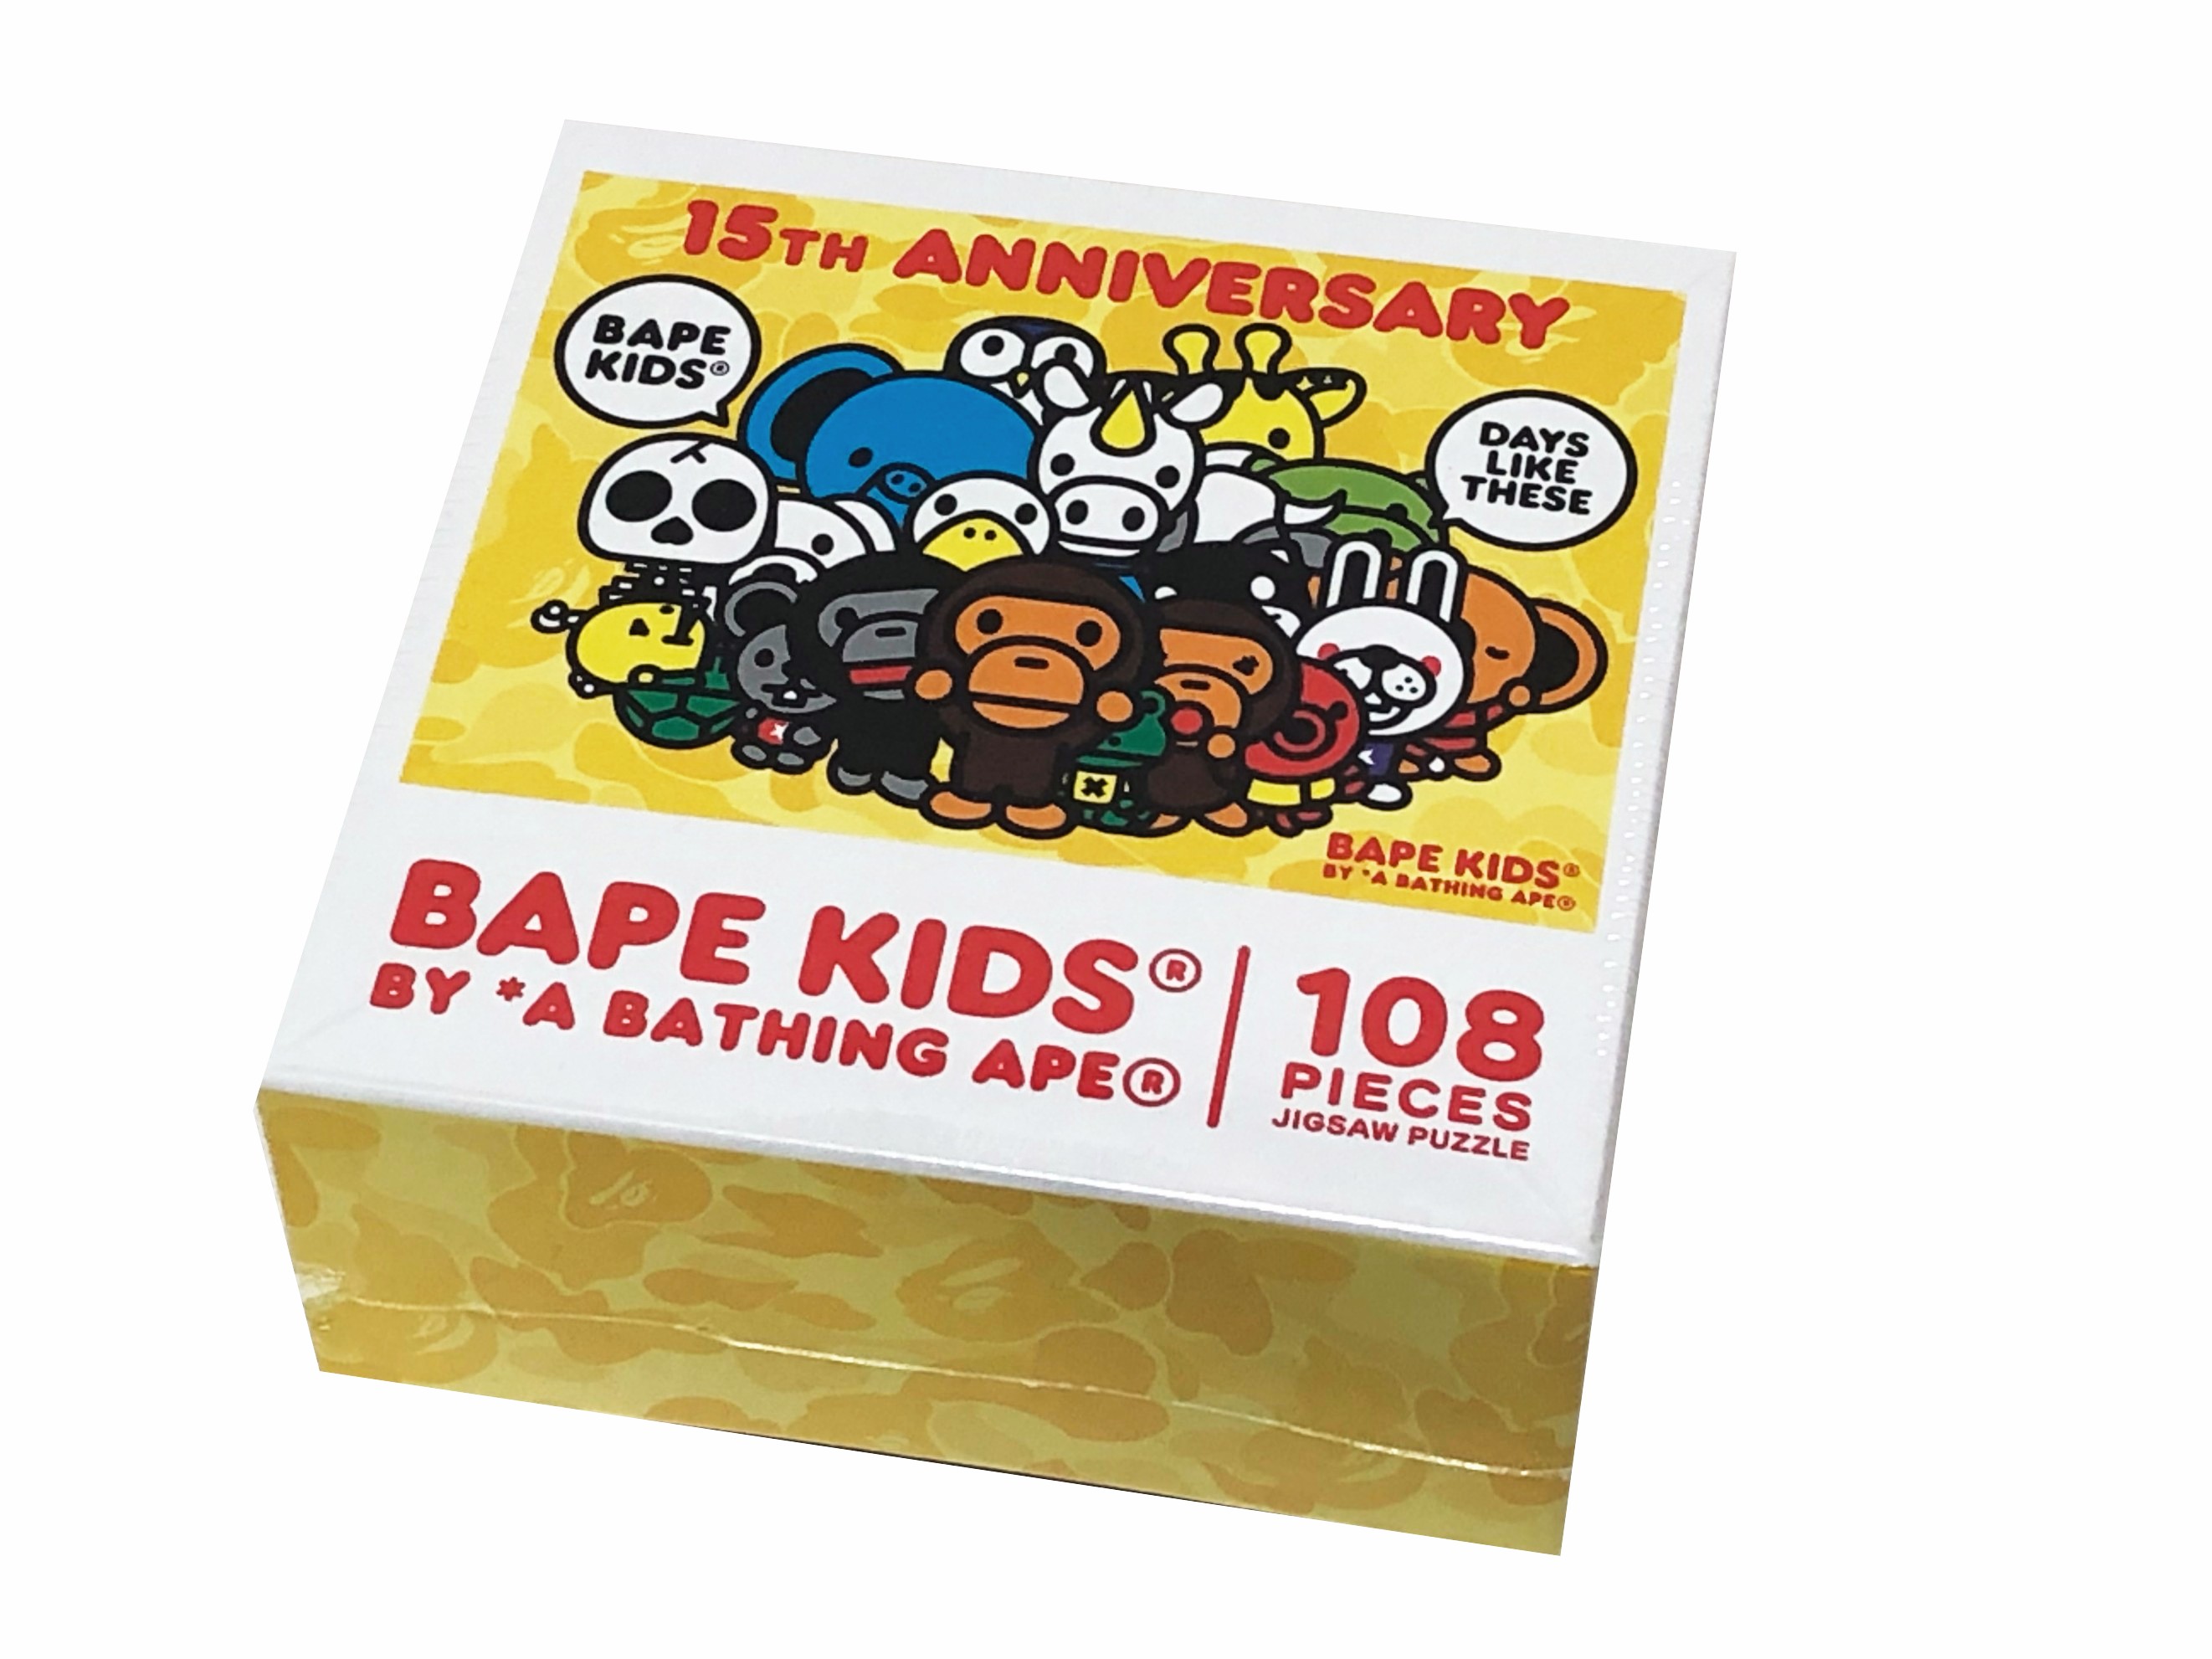 パズル, ジグソーパズル A BATHING APE BAPE KIDS 15TH ANNIVERSARY ABC CAMO BABY MILO PUZZLE 2021 108 